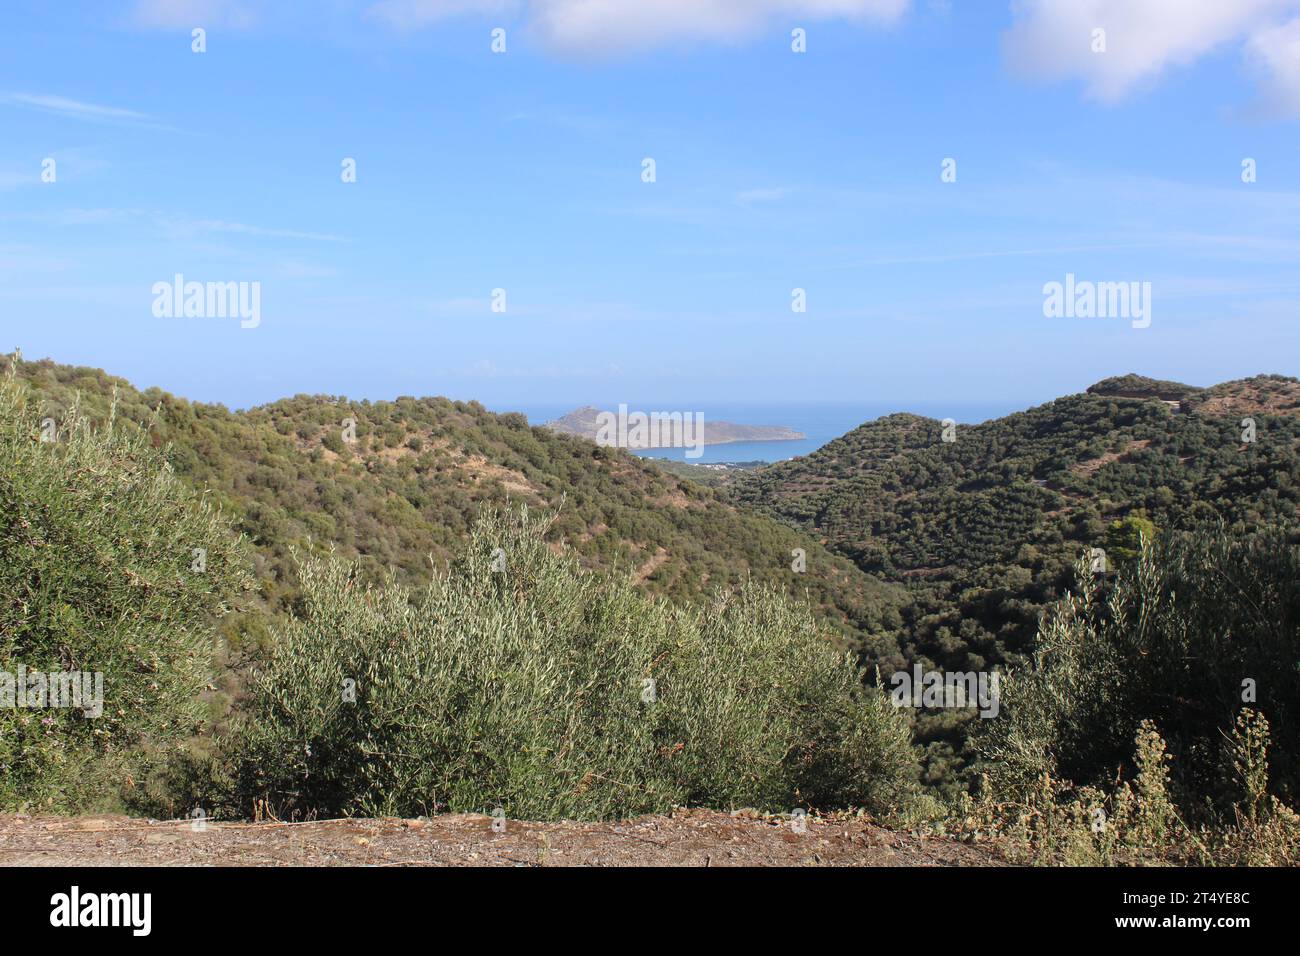 Spaziergang auf Kreta - Blick auf die Insel Agioi Theodoroi vor der Küste bei Agia Marina, Kreta, Griechenland Stockfoto